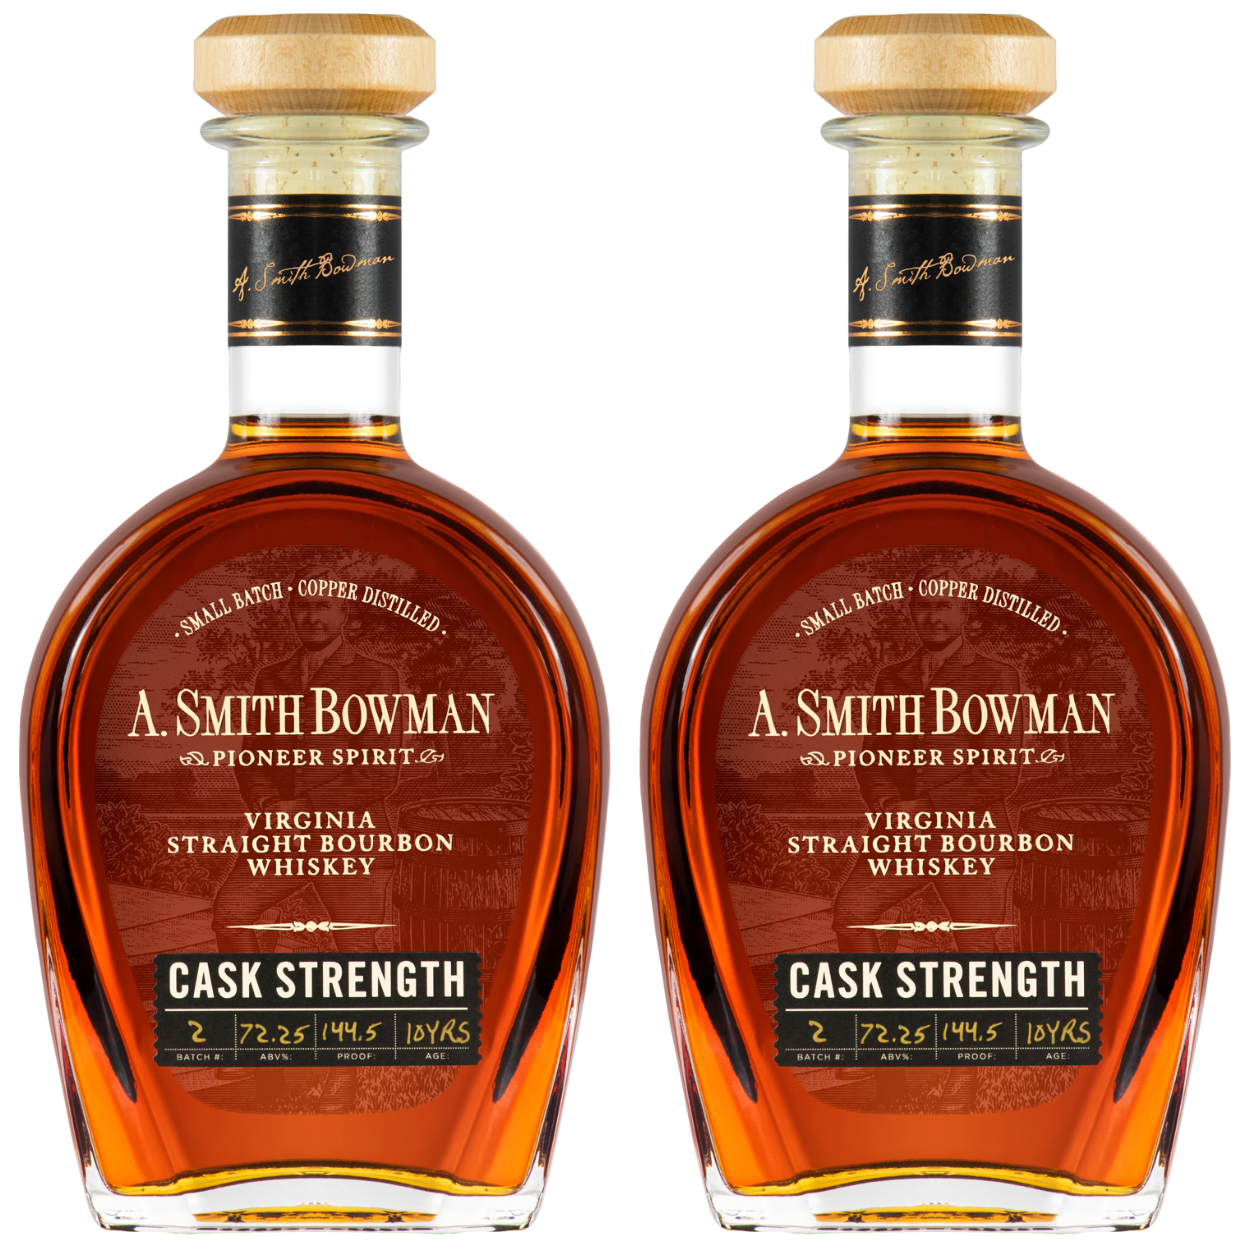 A. Smith Bowman Cask Strength Bourbon Batch #2